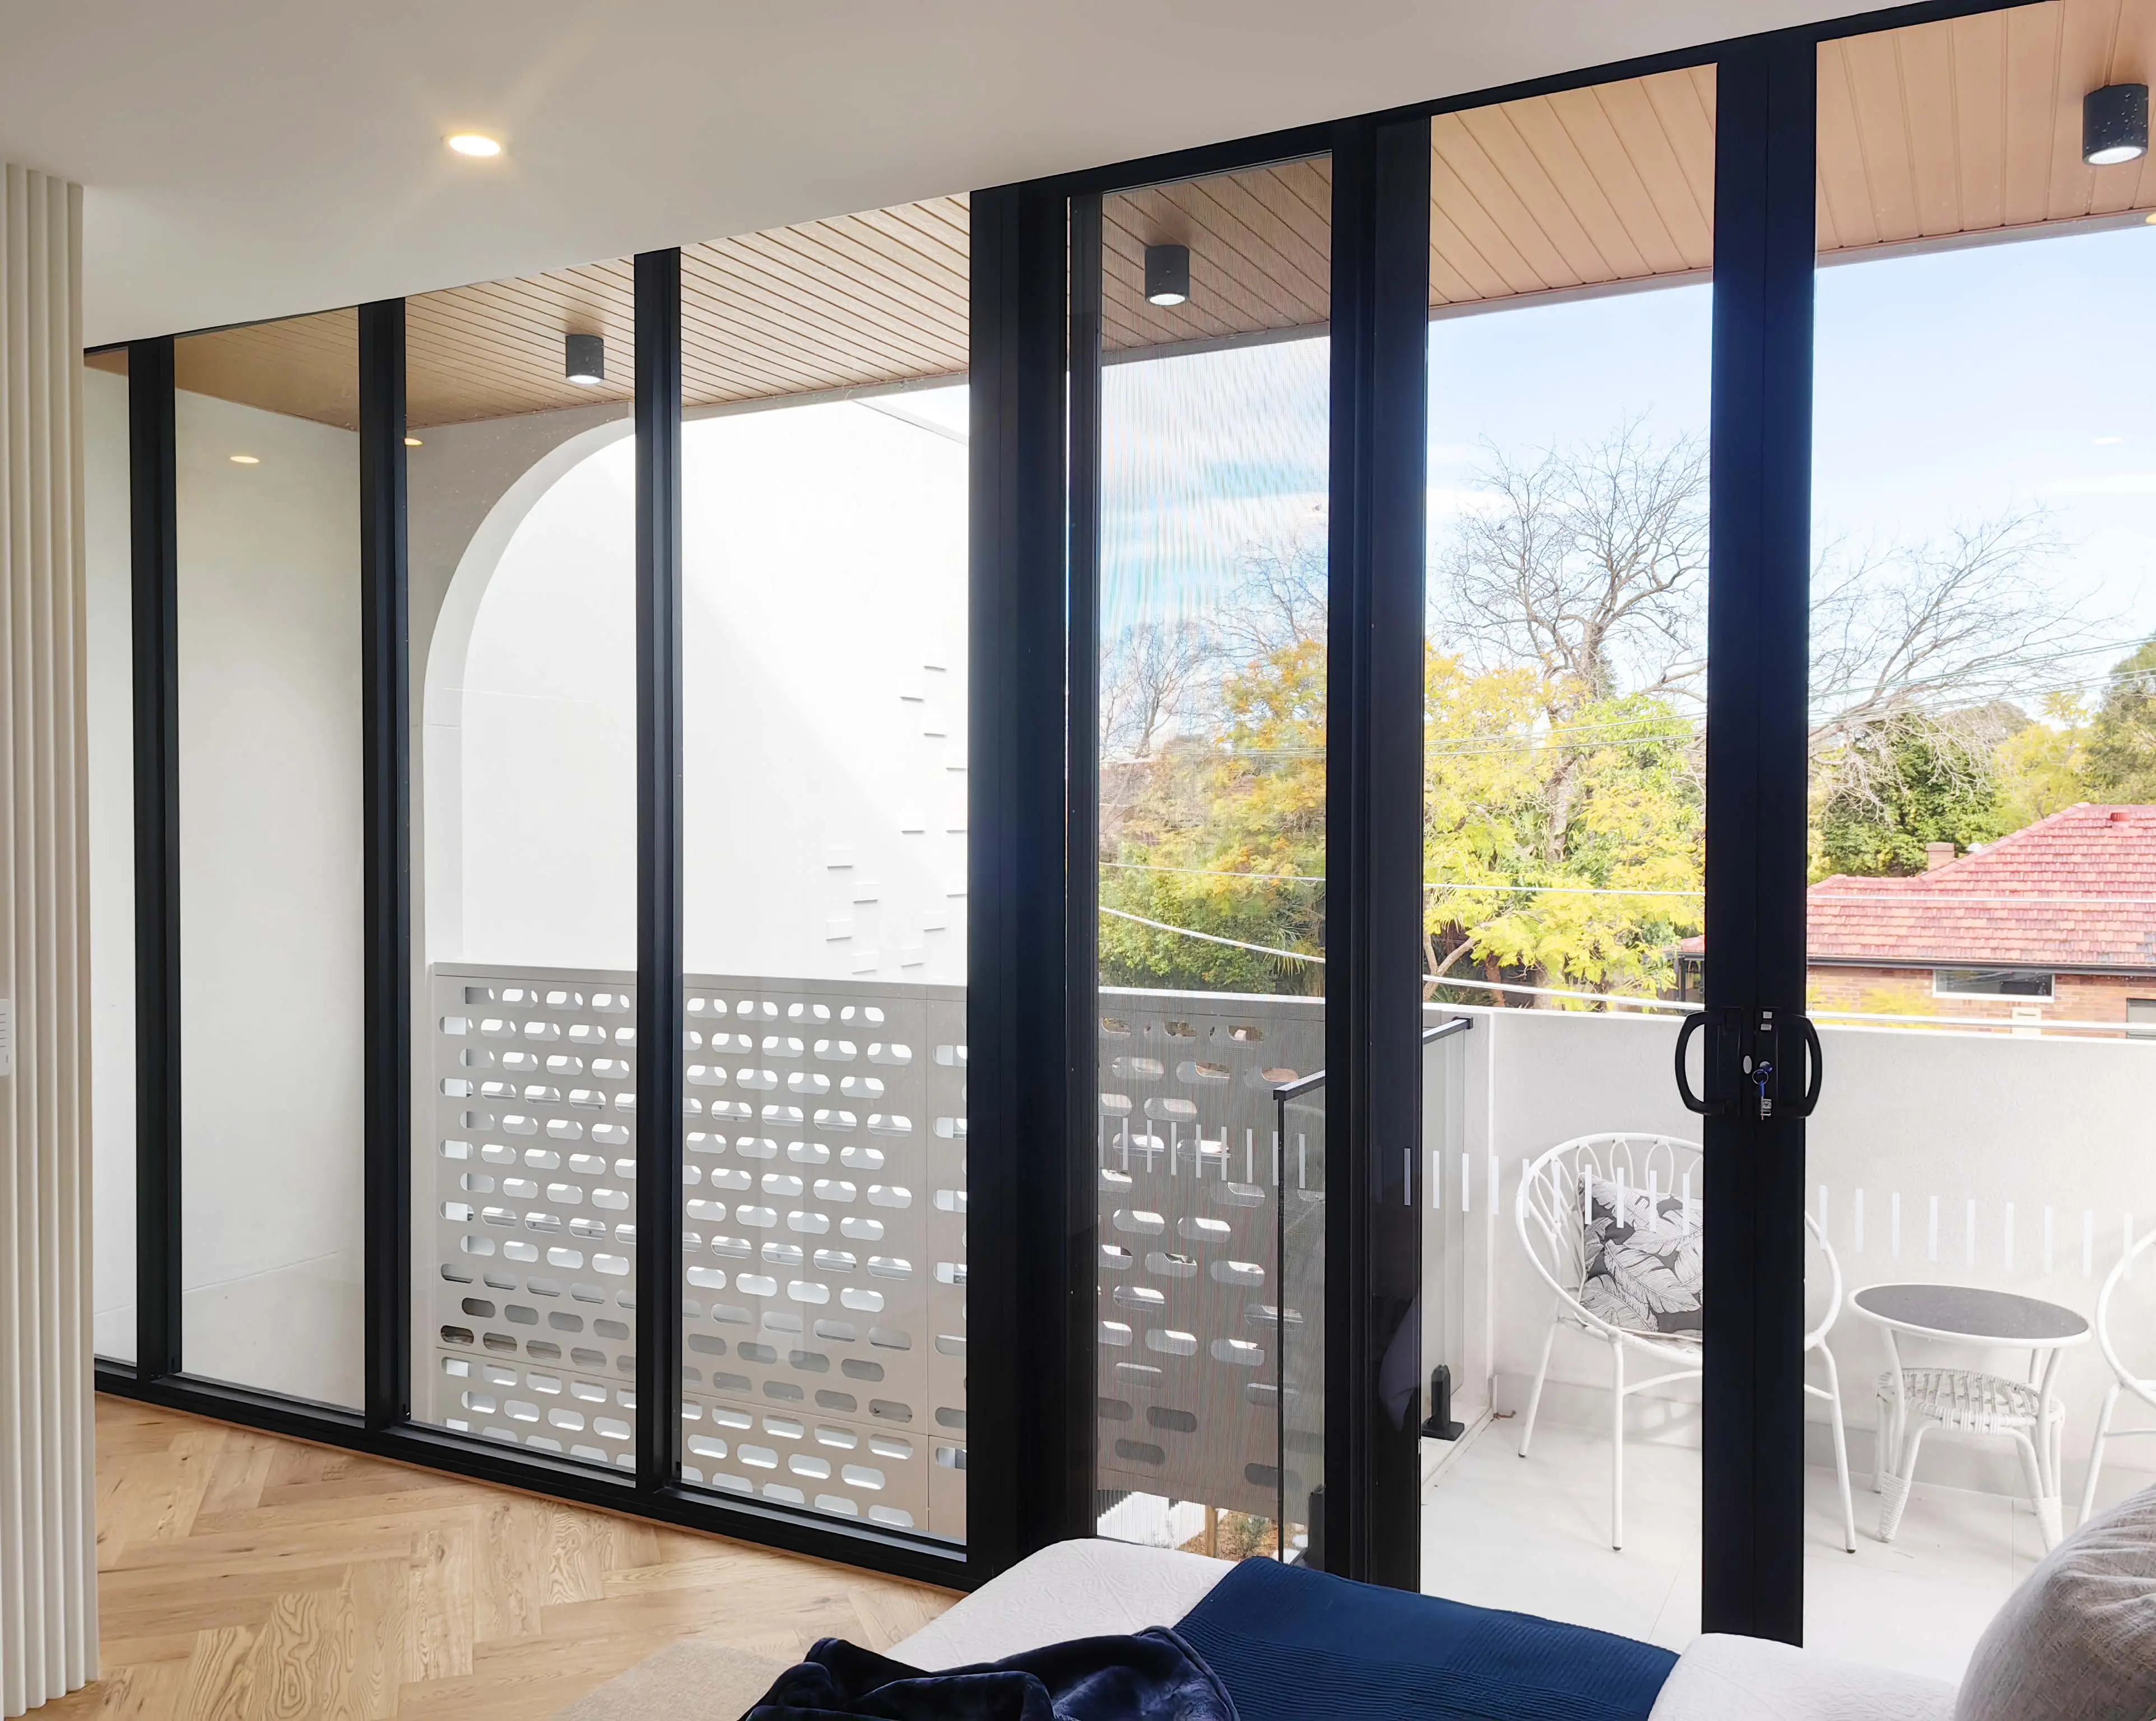 Villas Designs House Luxury Aluminum Patio Swing Door Sliding Stacker Doors Australian Standard Sliding Glass Door With Screen